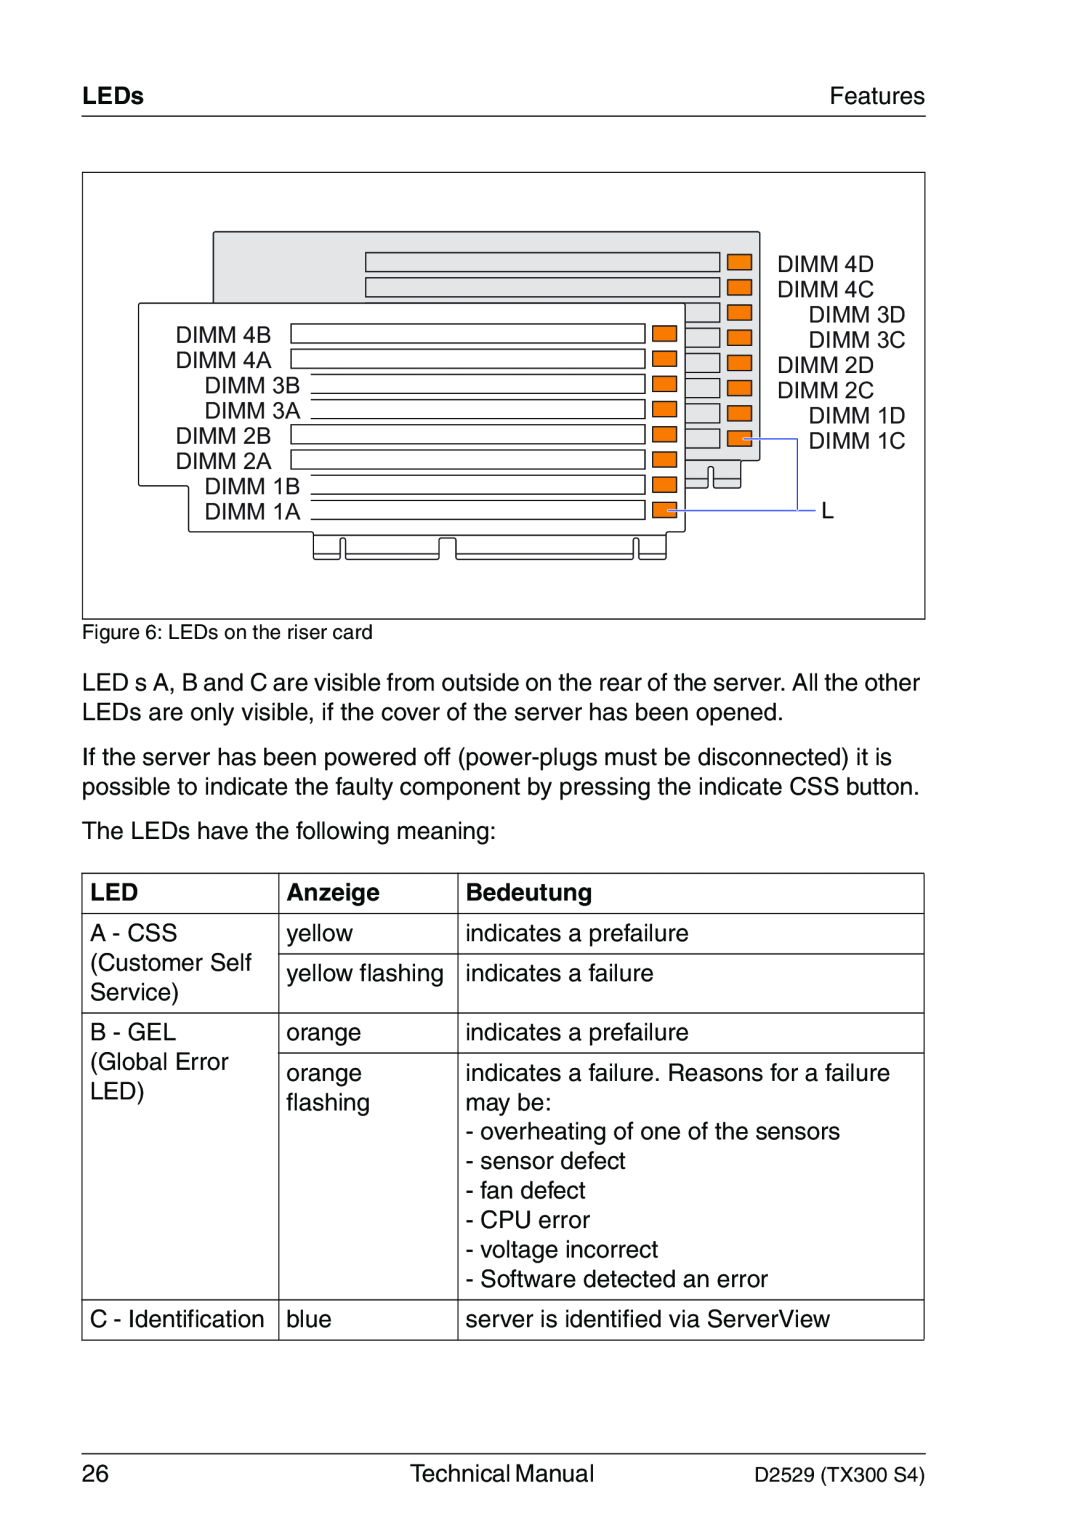 Fujitsu D2529 technical manual Anzeige, Bedeutung, LEDs, DIMM 4B DIMM 4A DIMM 3B DIMM 3A DIMM 2B DIMM 2A DIMM 1B DIMM 1A 